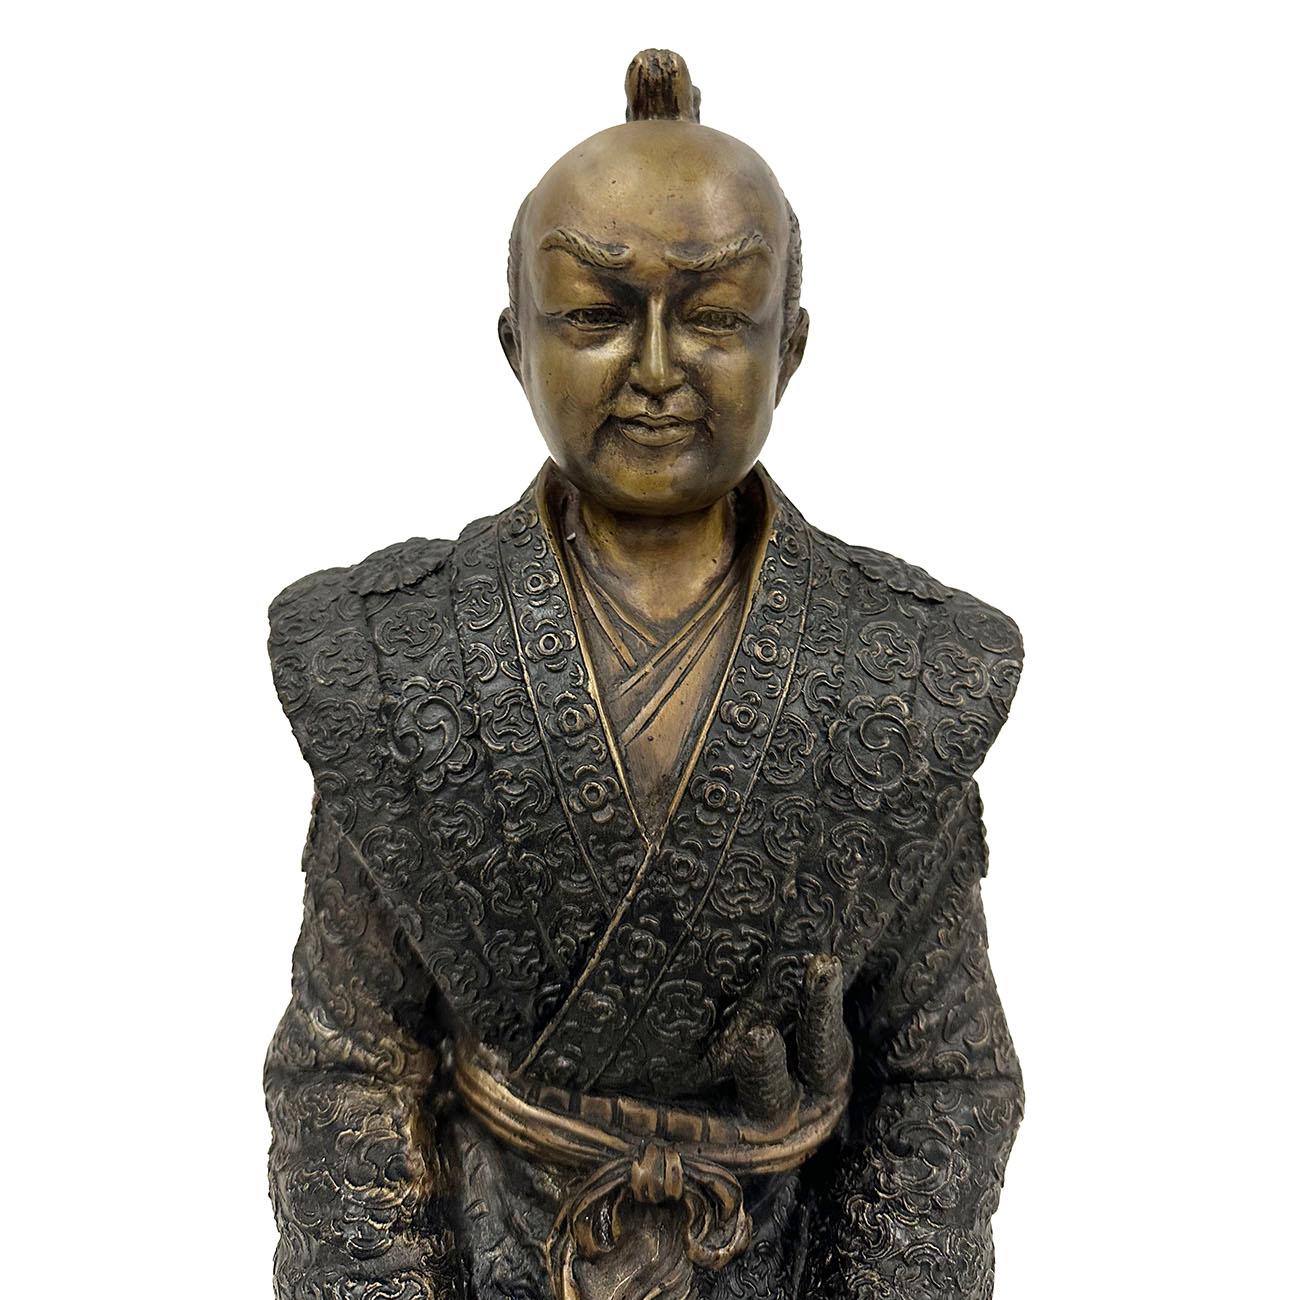 Cette statue antique de guerrier samouraï japonais a été datée des années 1920. Avec des pièces métalliques très détaillées, il montre l'art artisanal japonais en matière de métal. Il s'agit d'une statue assise de Condit faite à la main et en très